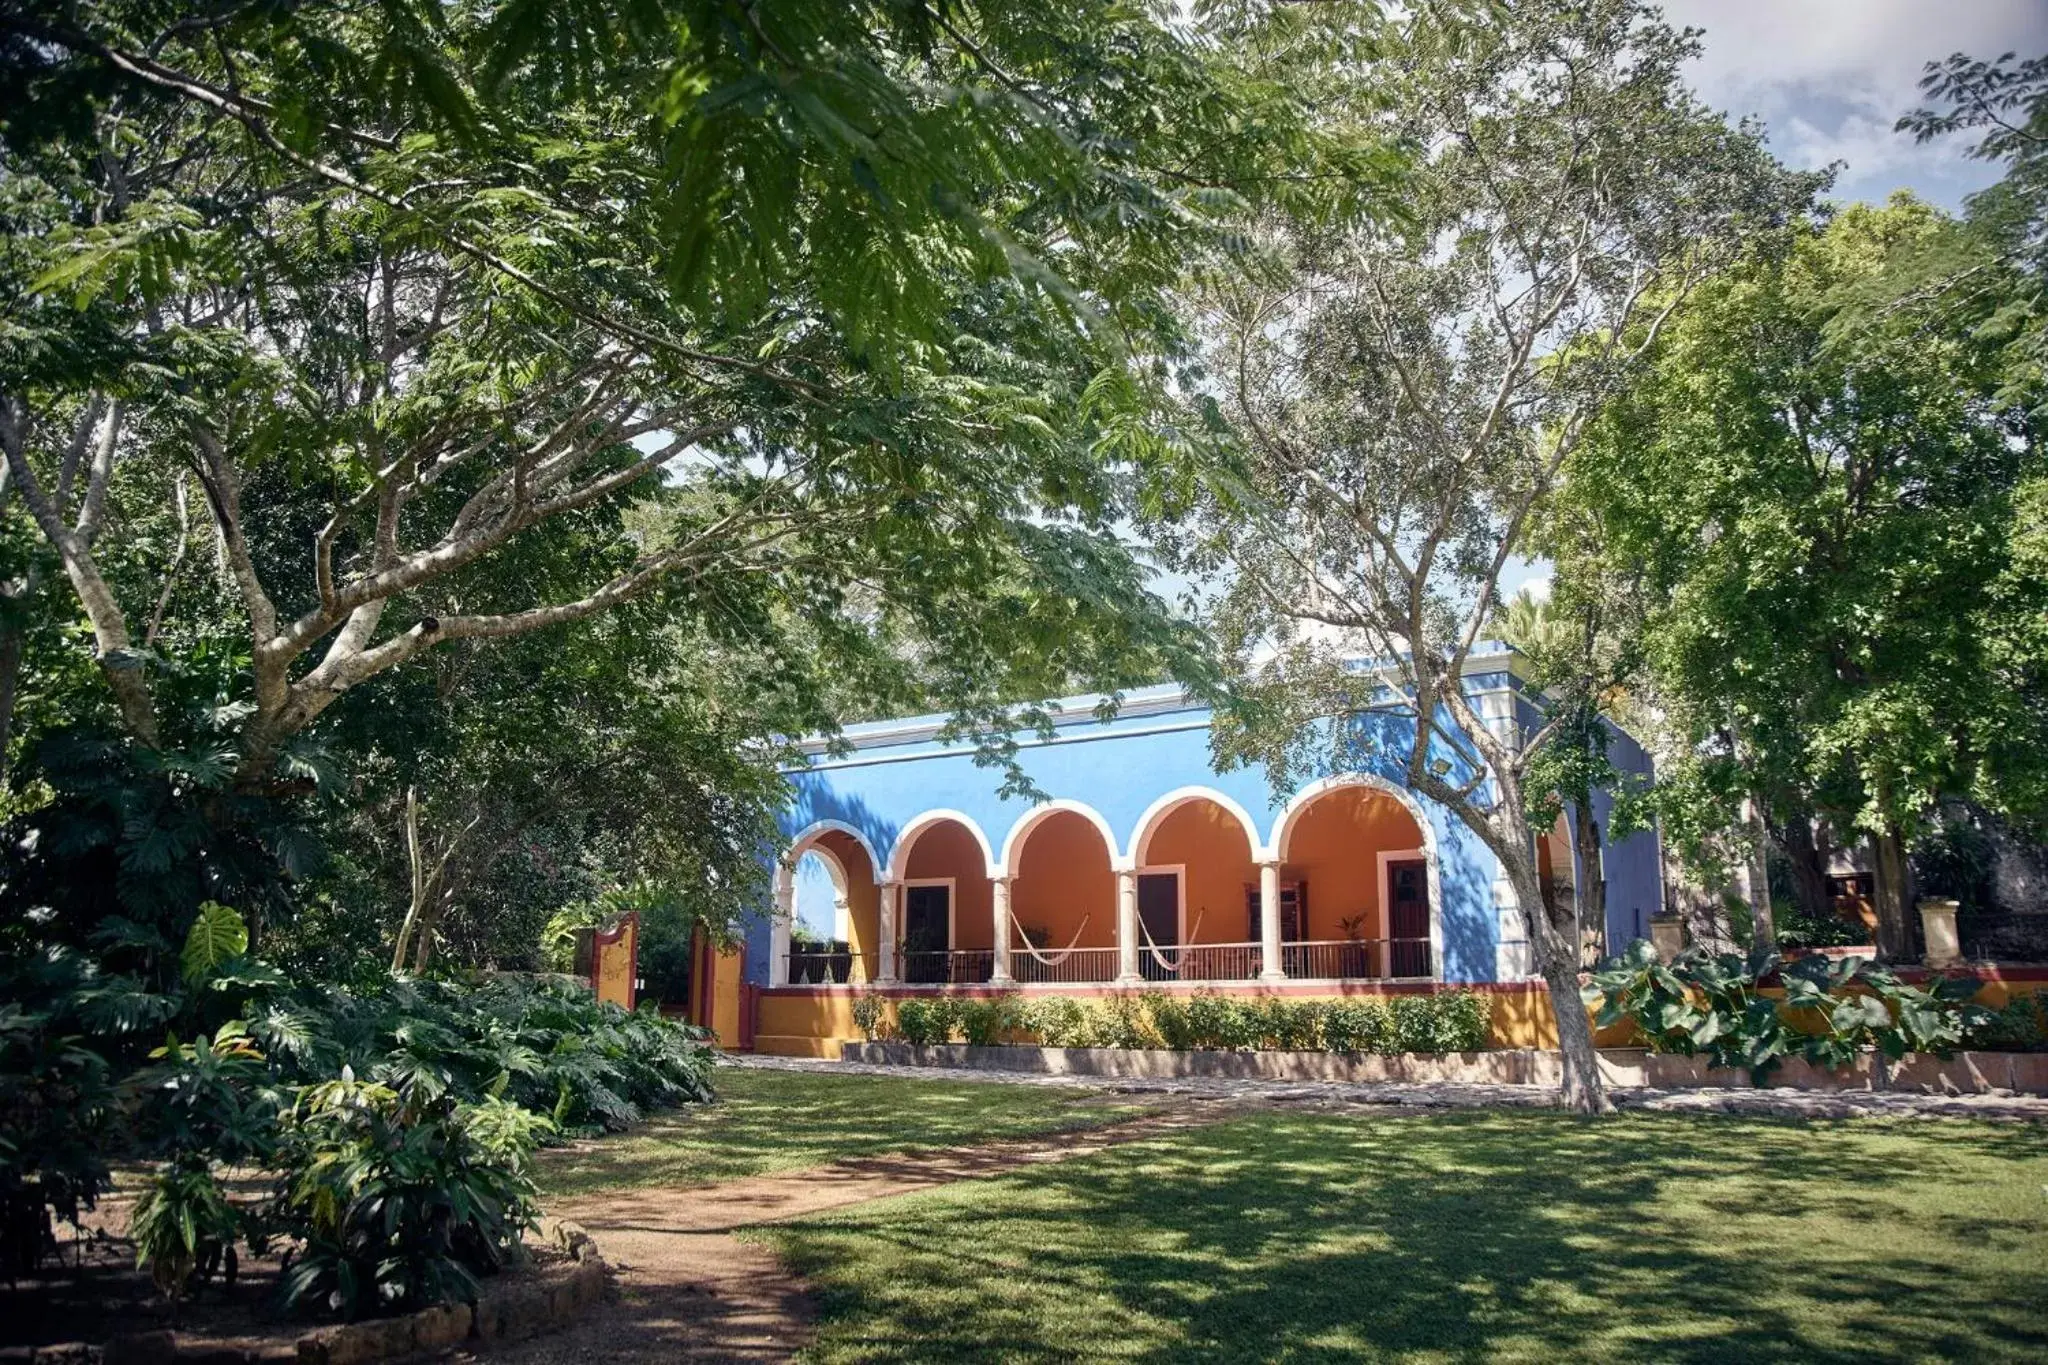 Property Building in Hacienda San Jose